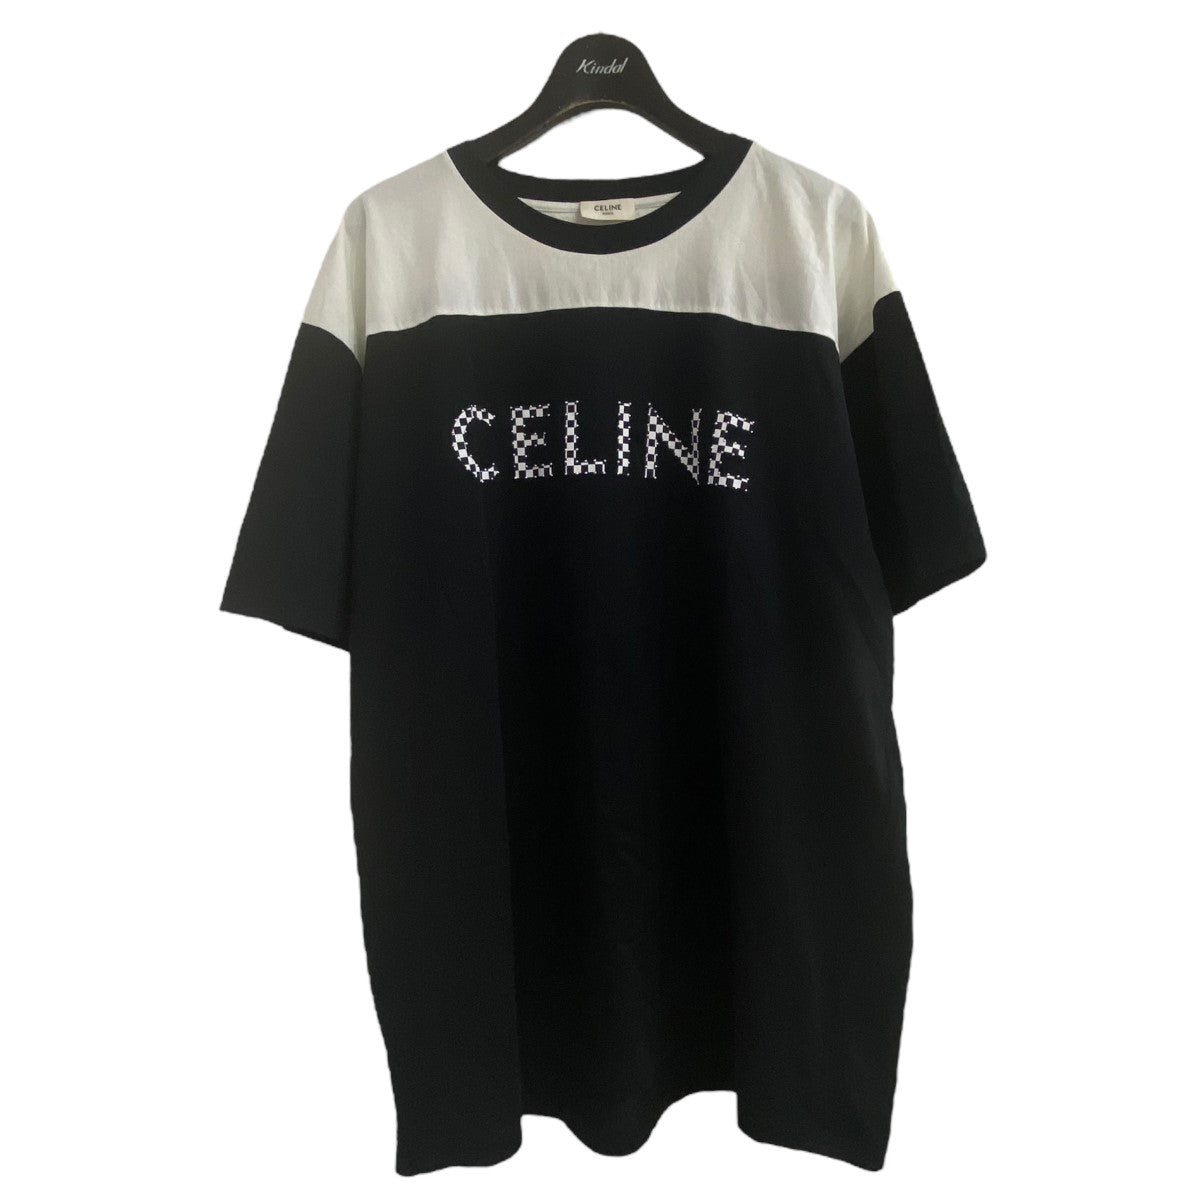 CELINE(セリーヌ) スタッズロゴTシャツ 2X839500O ブラック×ホワイト ...